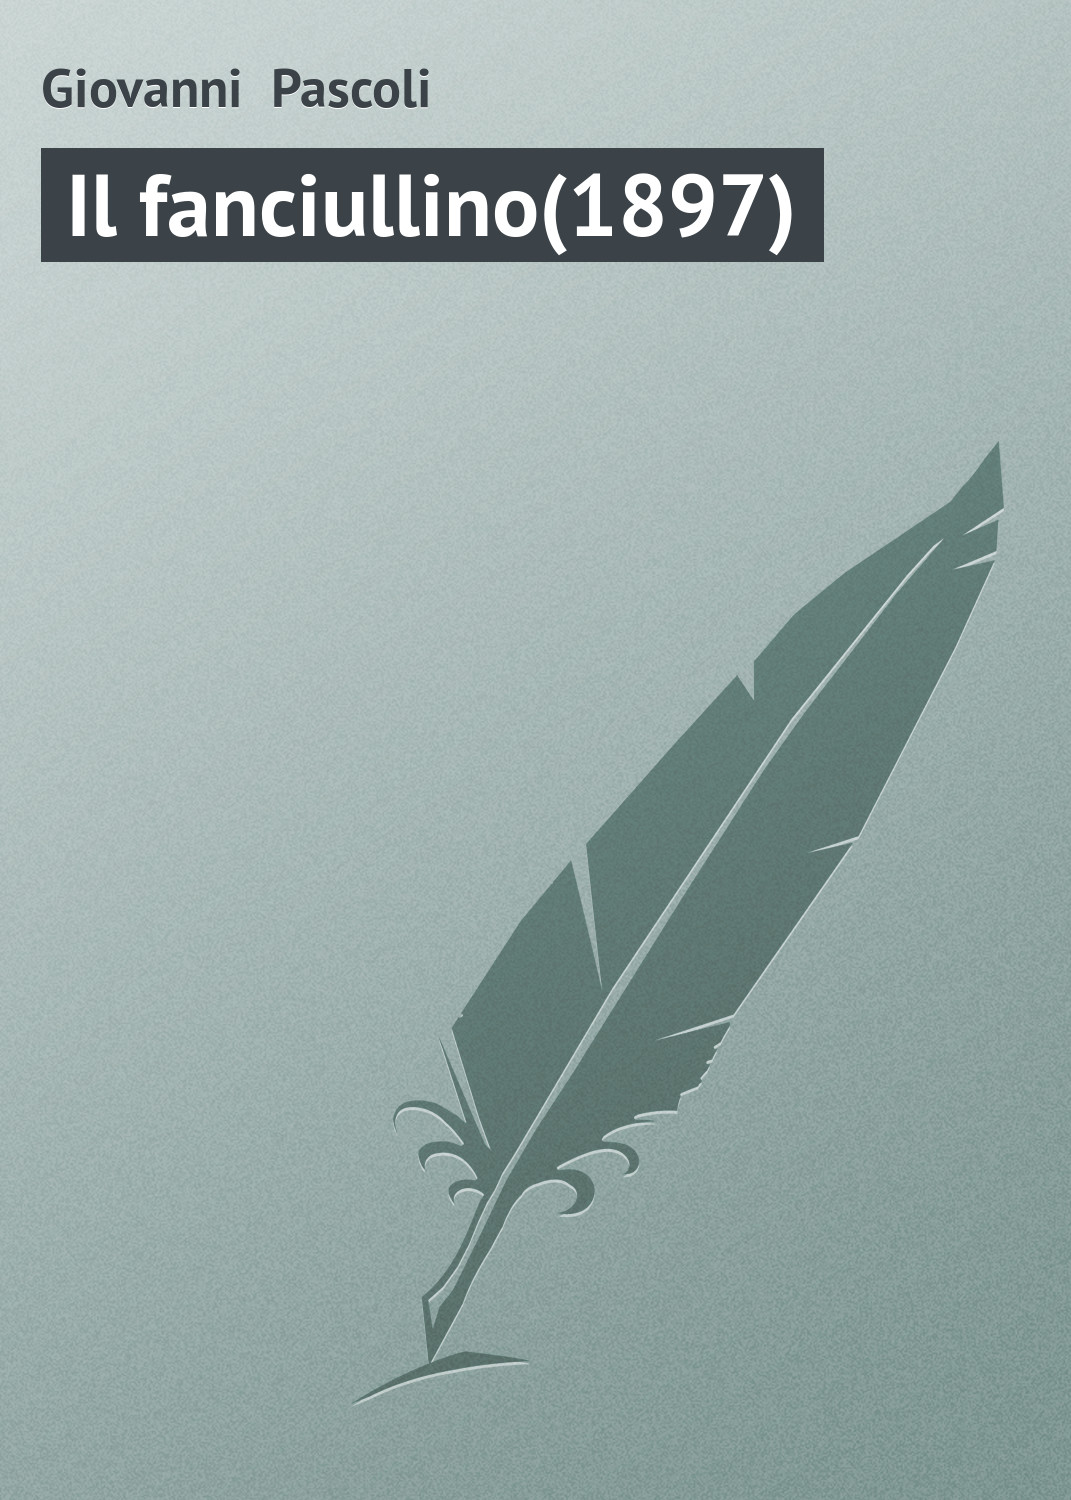 Книга Il fanciullino(1897) из серии , созданная Giovanni Pascoli, может относится к жанру Зарубежная старинная литература, Зарубежная классика. Стоимость электронной книги Il fanciullino(1897) с идентификатором 21103758 составляет 5.99 руб.